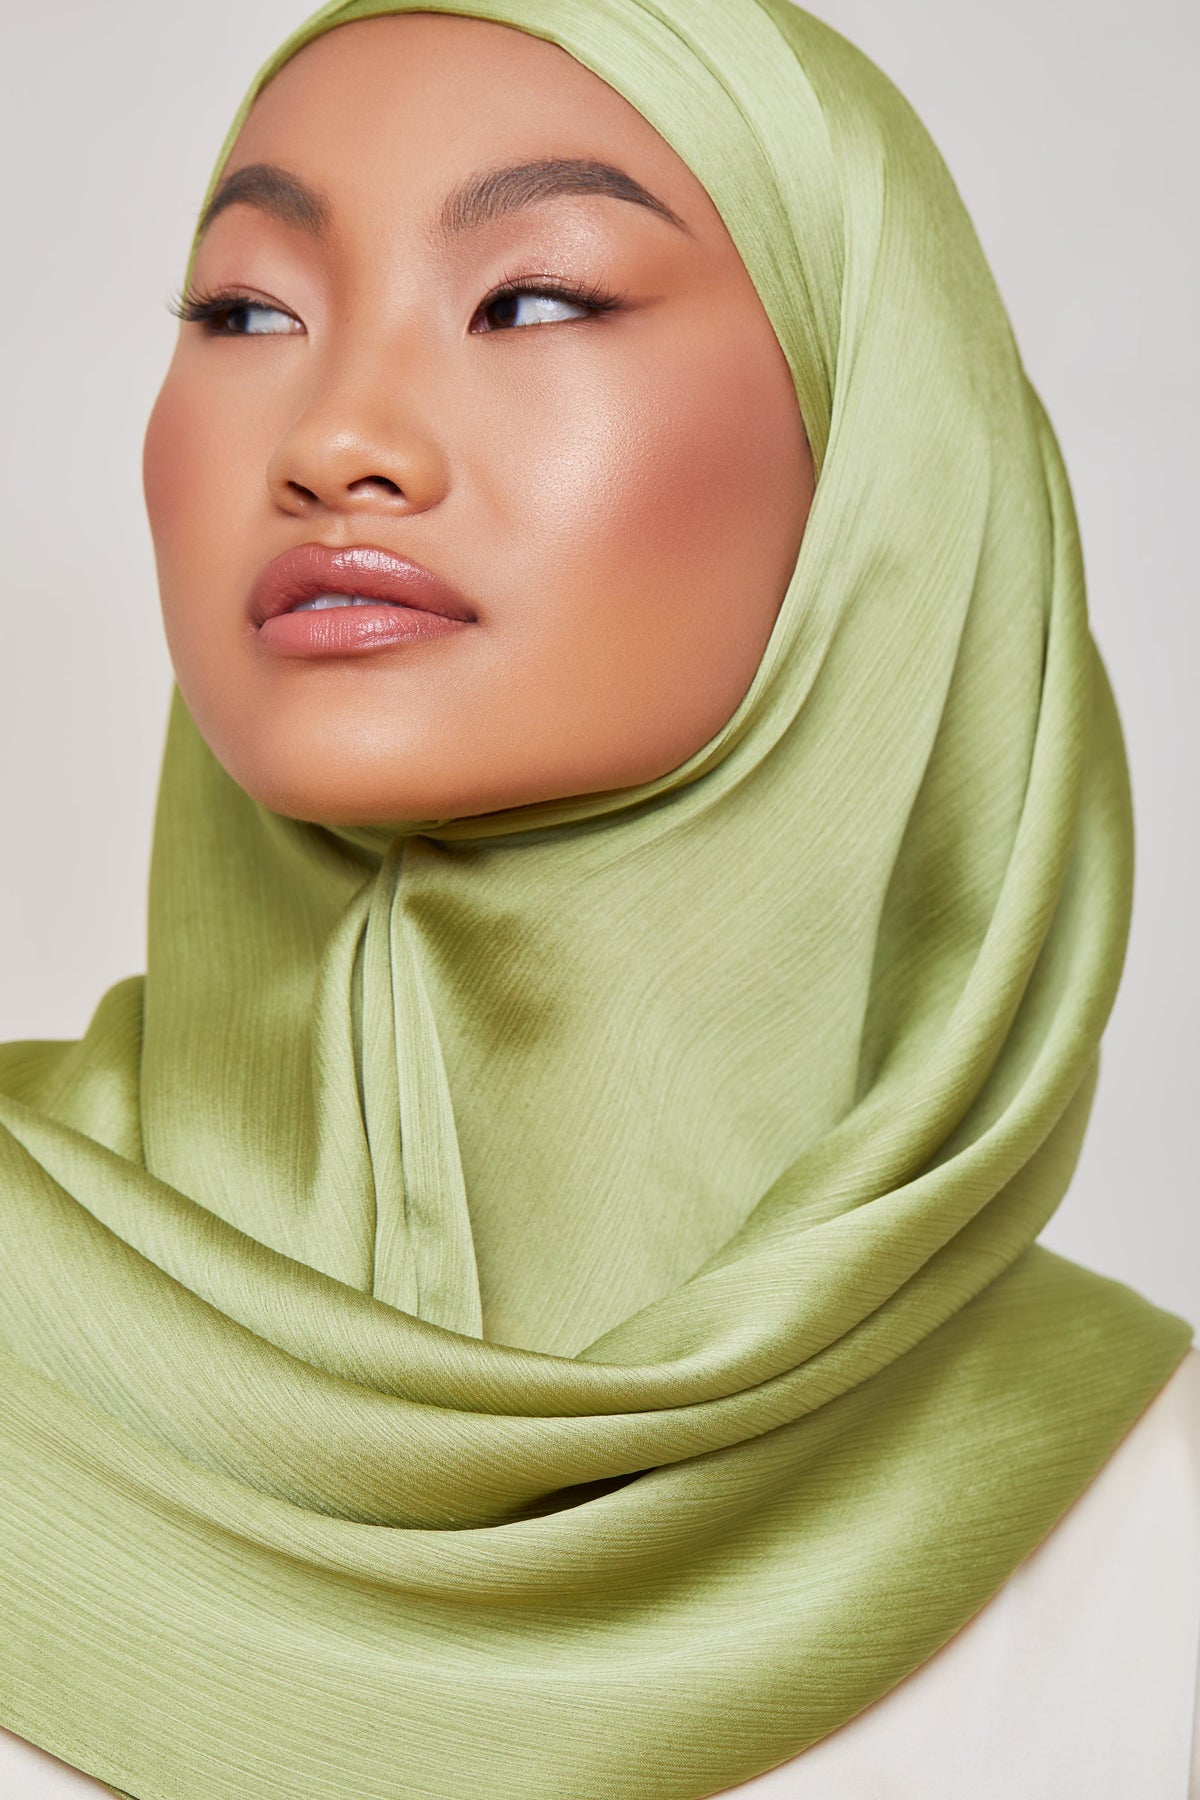 TEXTURE Satin Crepe Hijab - Algae Crepe epschoolboard 